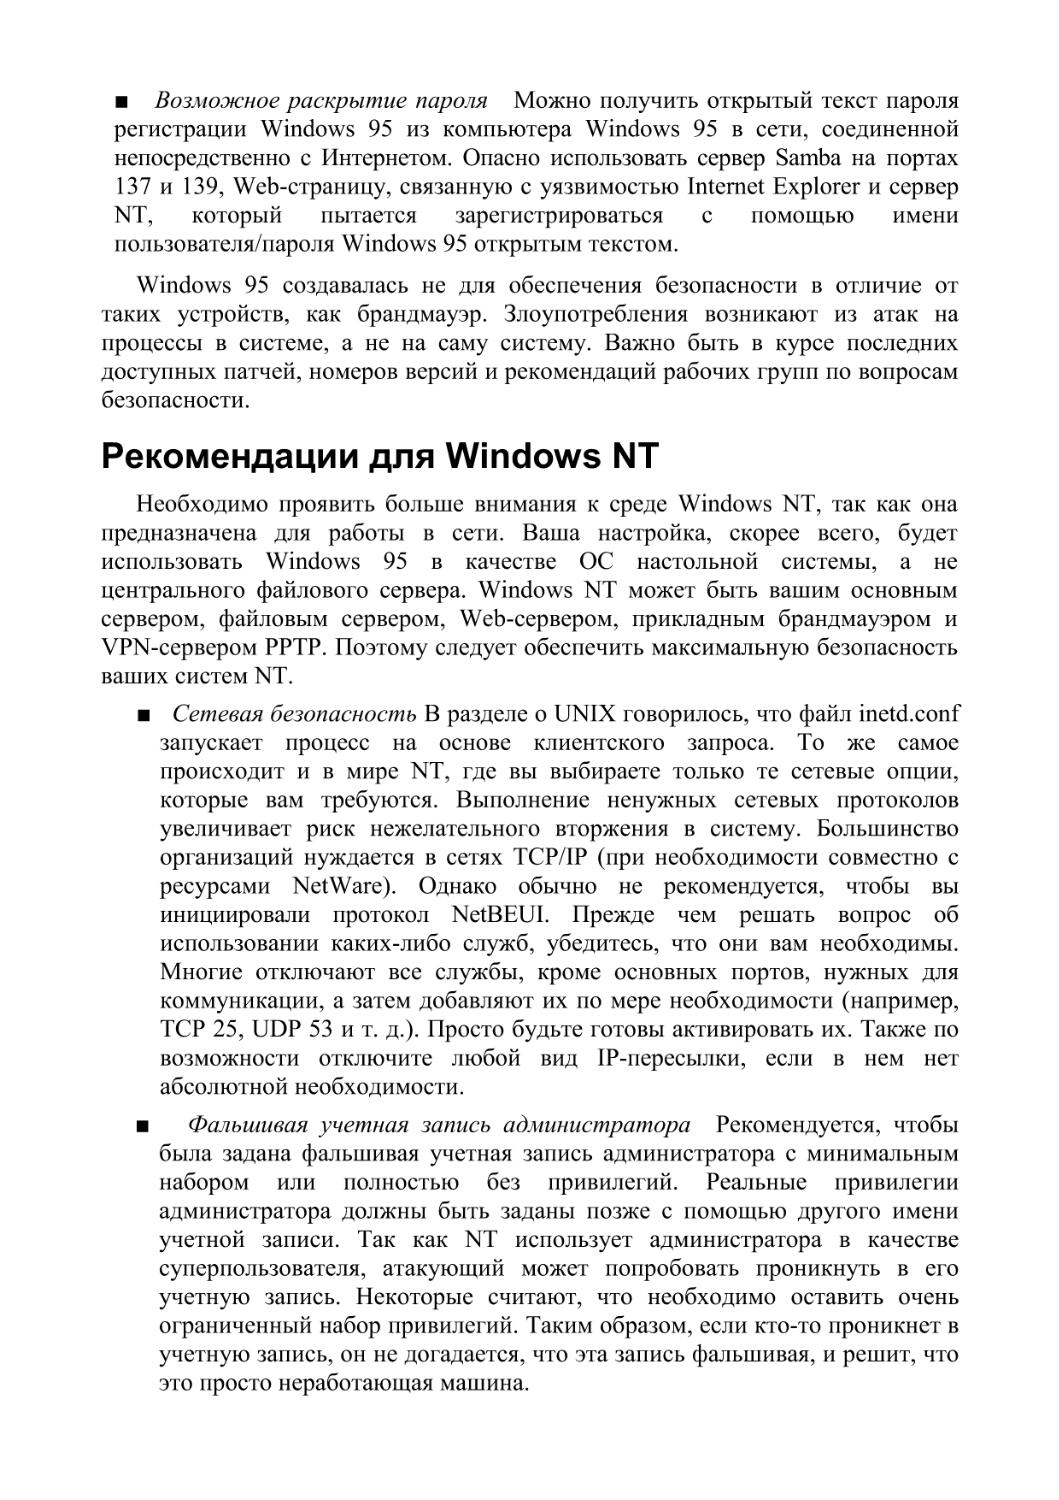 Рекомендации для Windows NT